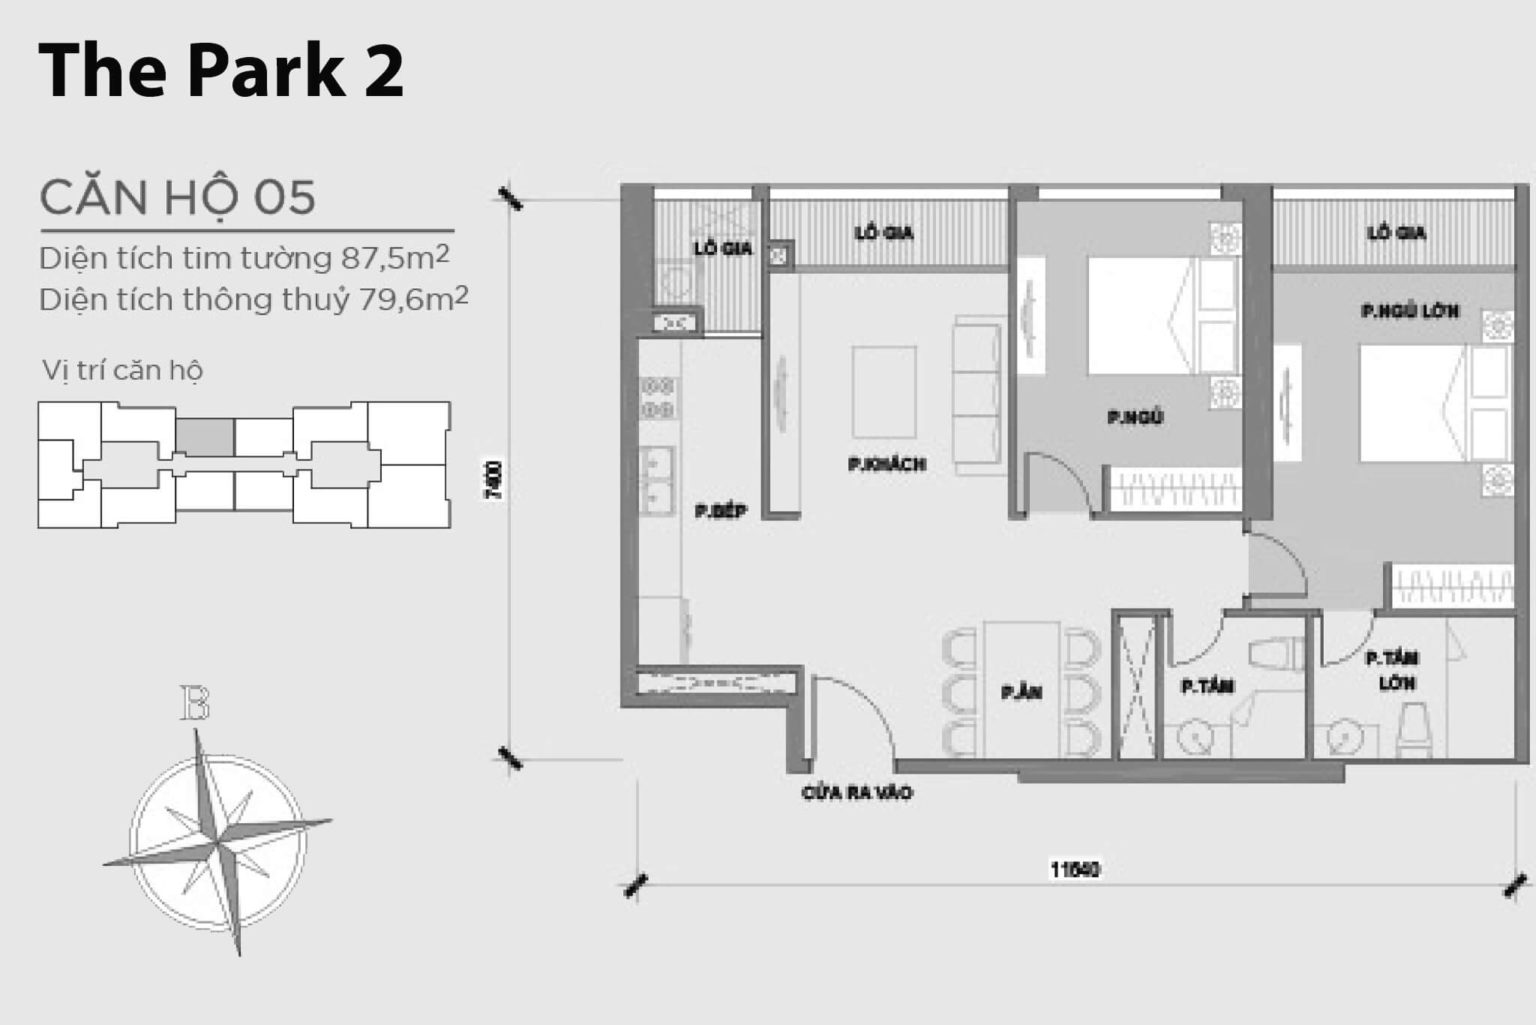 202301/02/09/171813-mat-bang-layout-park-2-can-ho-05-1536x1025.jpg